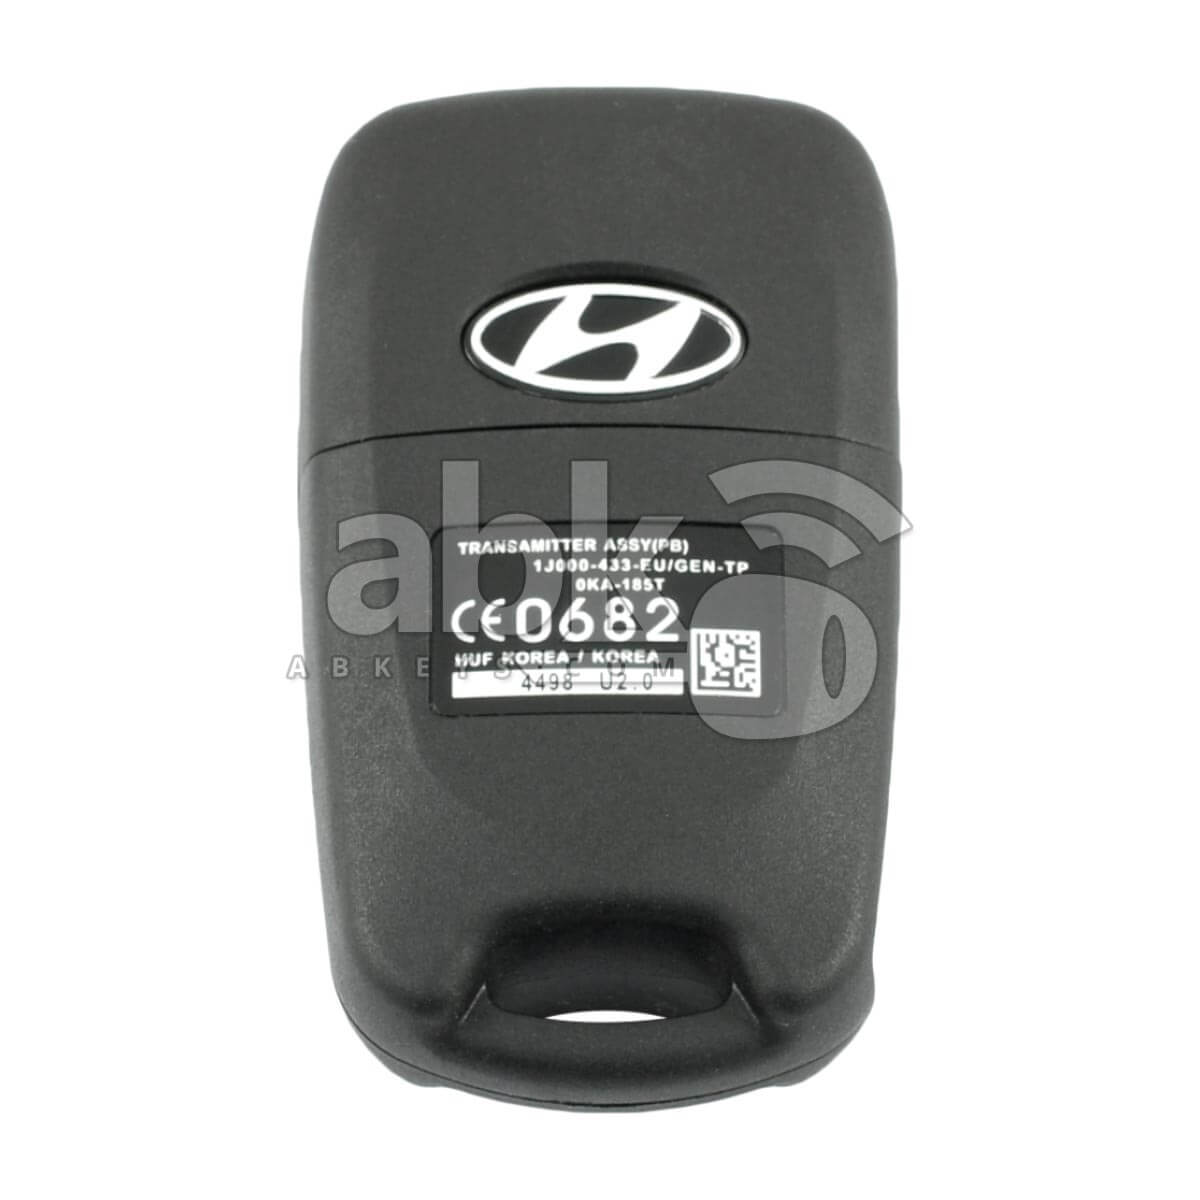 Hyundai 2008+ Flip Remote Cover 3Buttons HYN17R - ABK-1640 - ABKEYS.COM